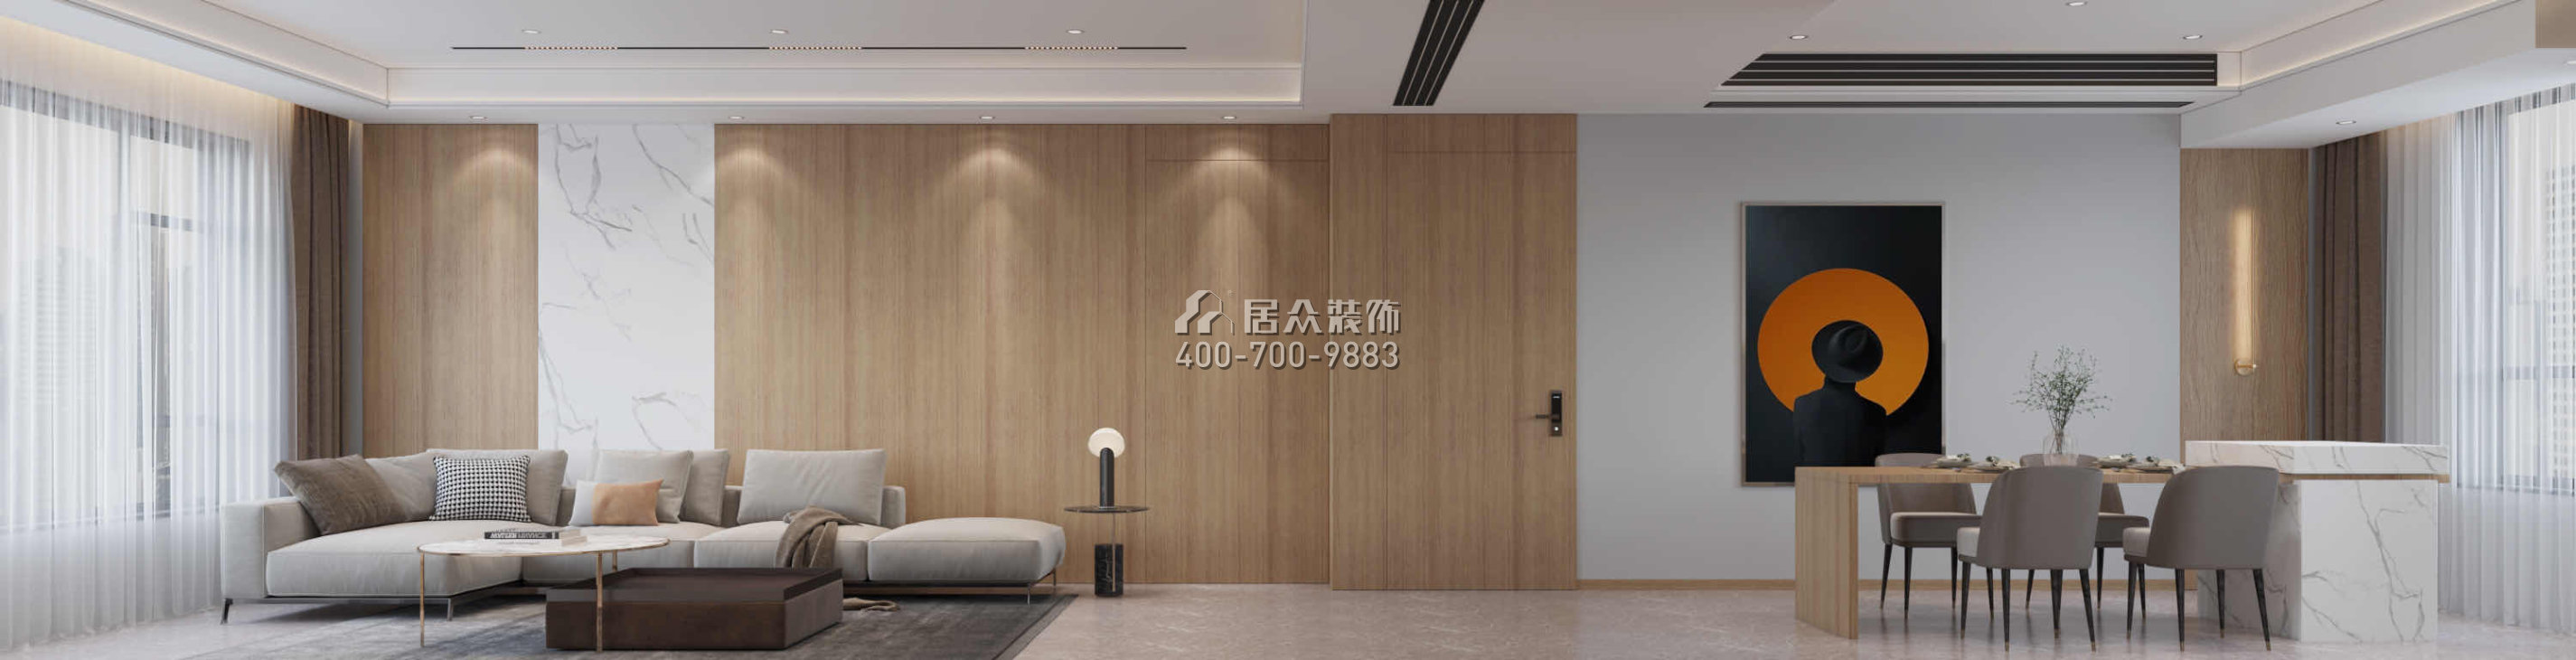 香江悅府160平方米現代簡約風格平層戶型客餐廳一體裝修效果圖